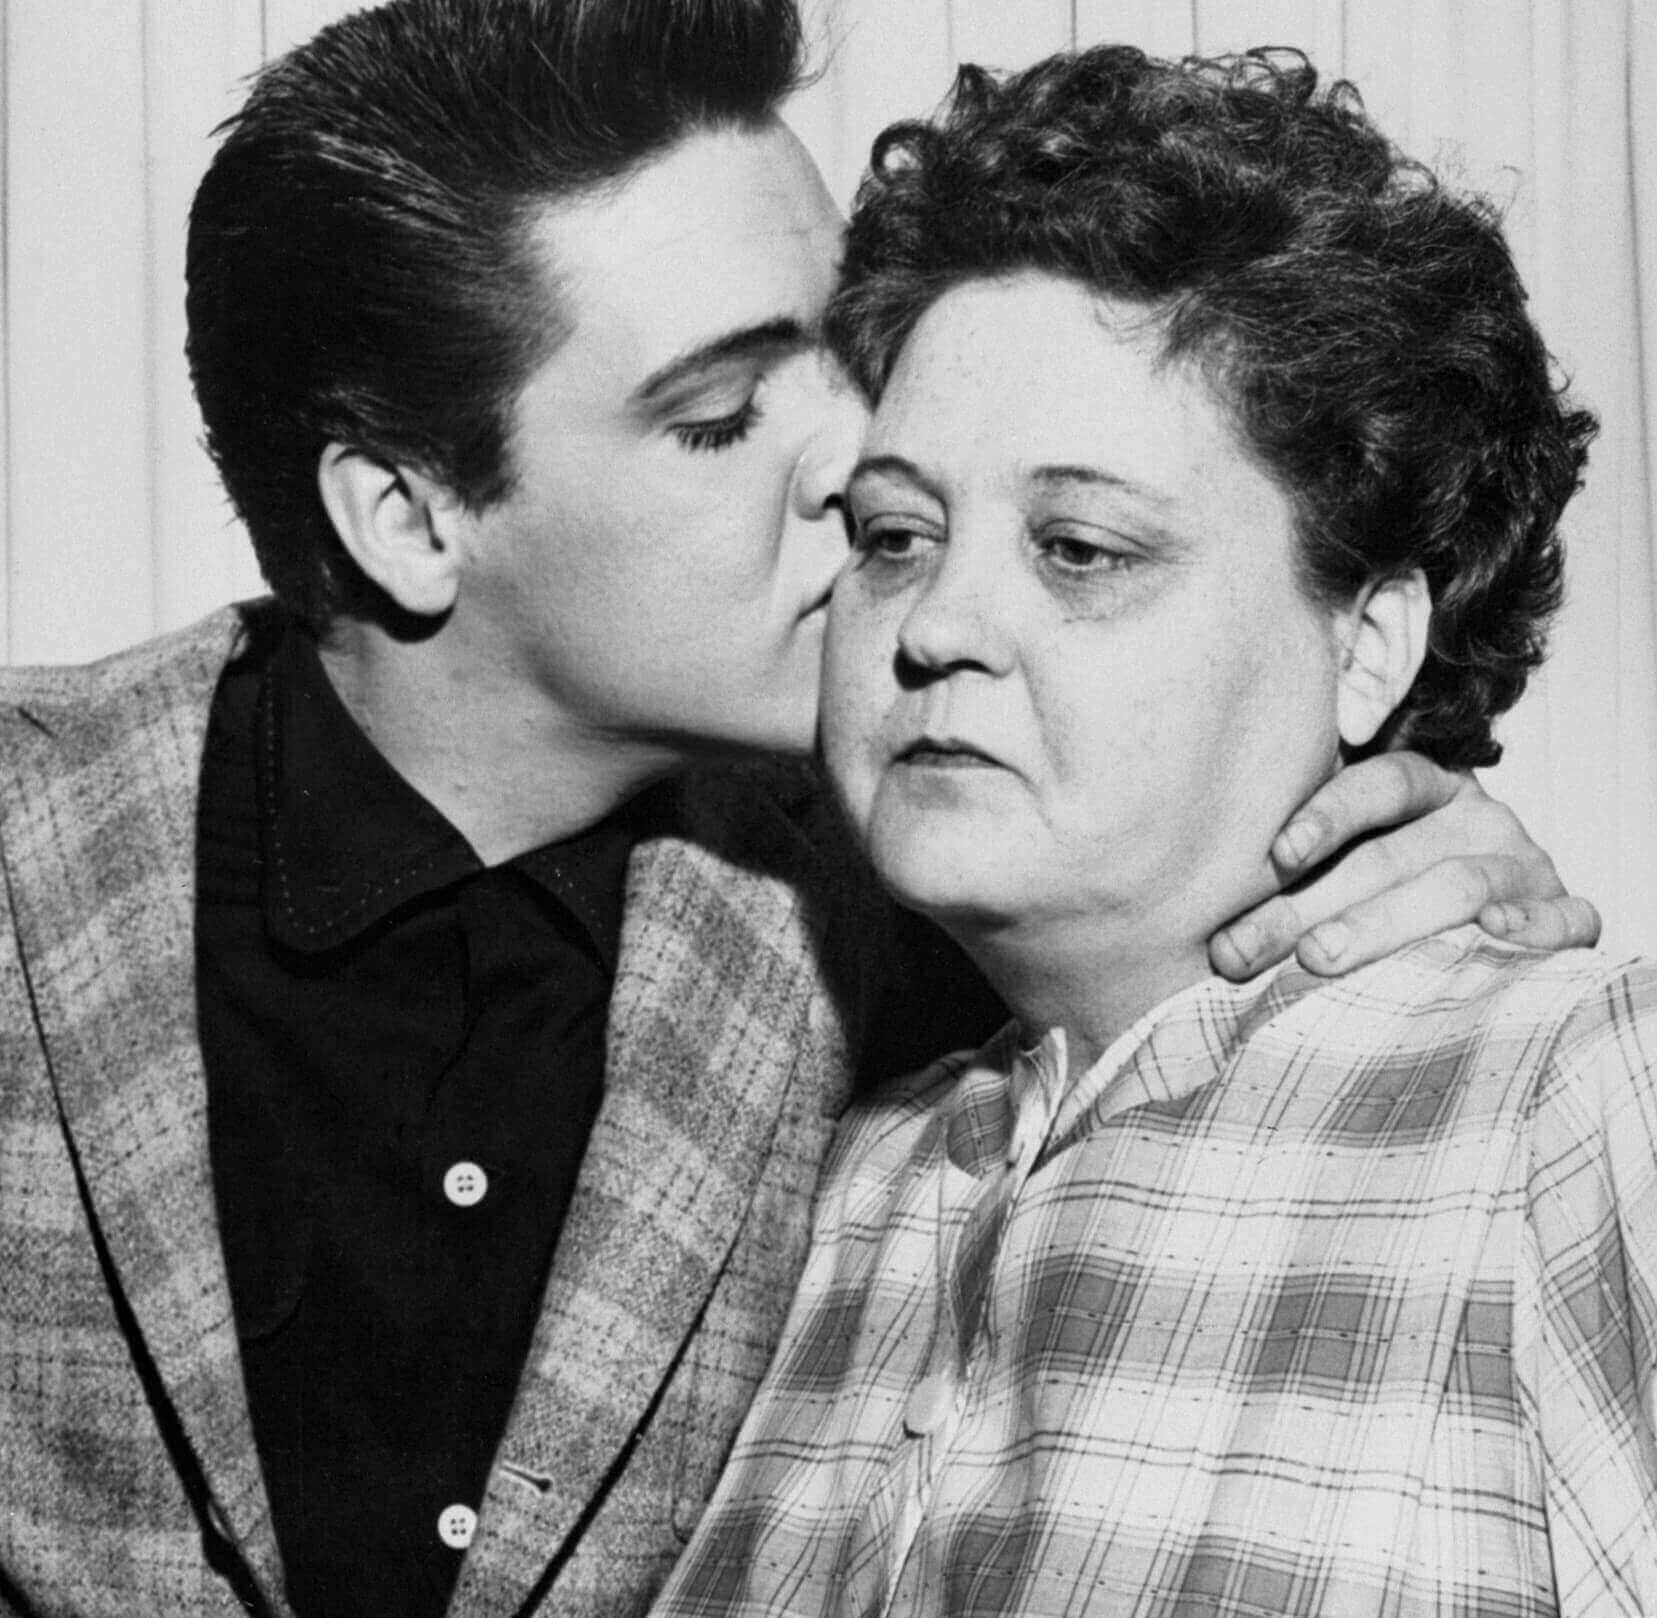 Elvis Presley with his mom, Gladys Presley